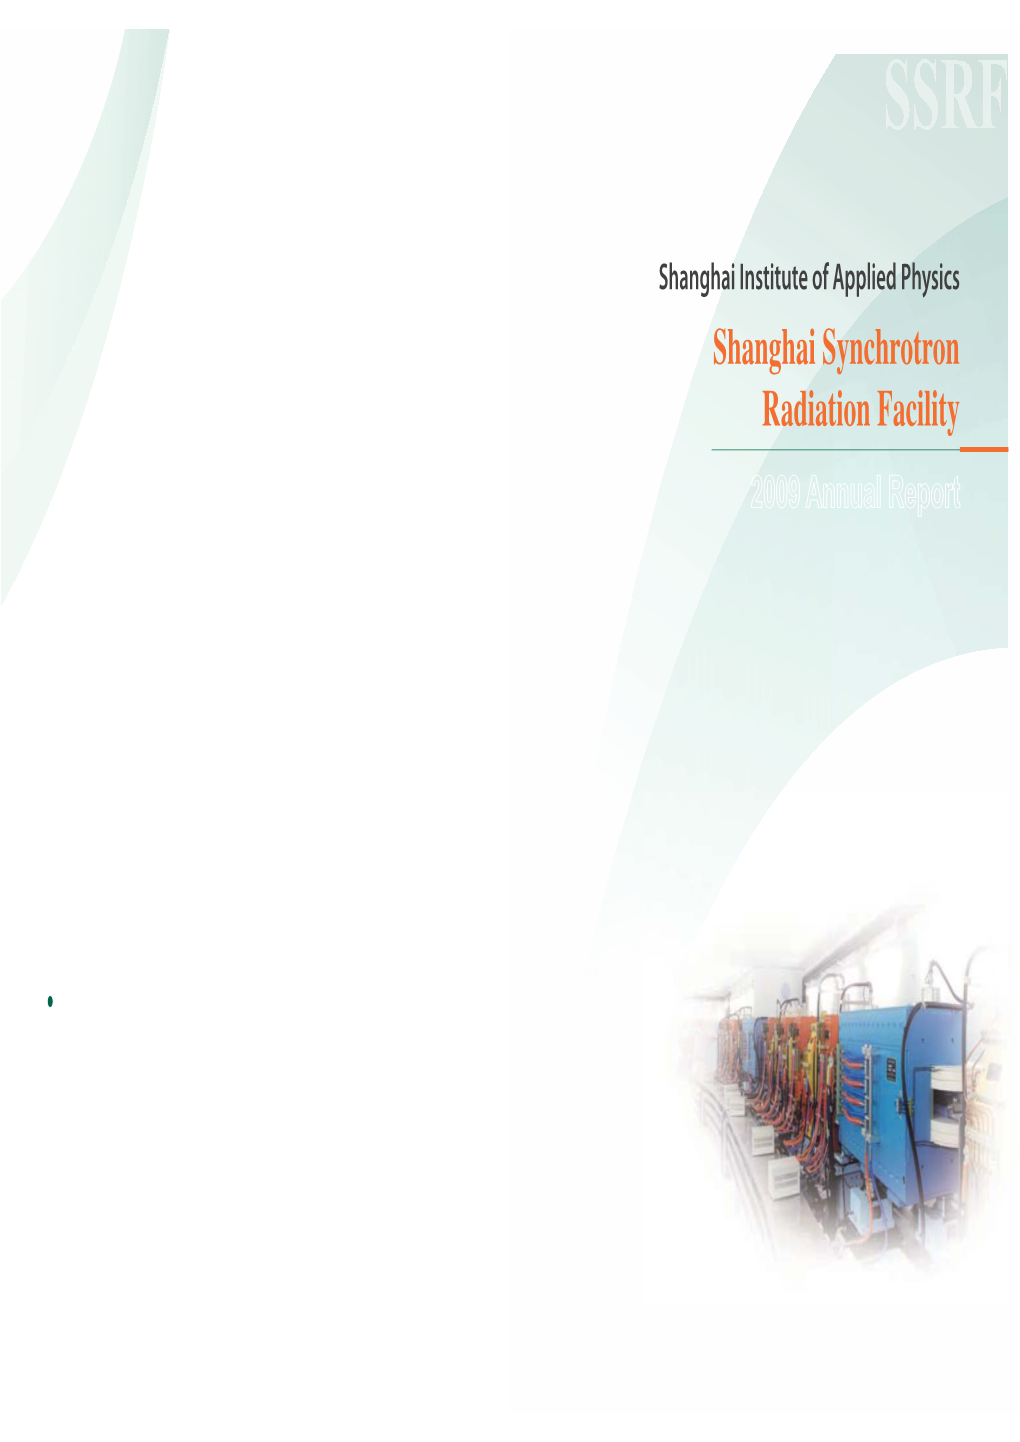 Shanghai Synchrotron Radiation Facility 2009 Annual Report SSRF